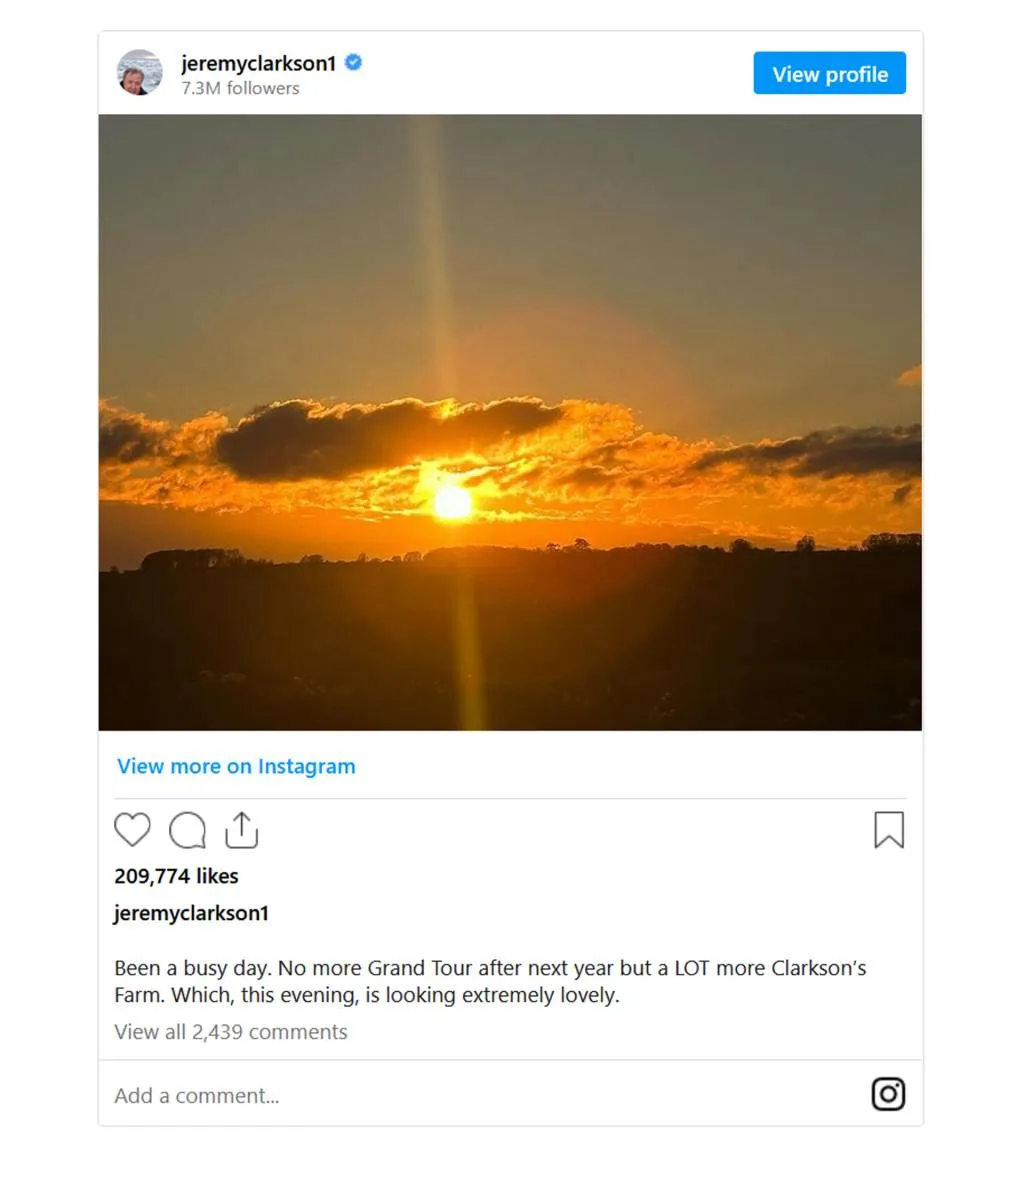 Instagram post by Jeremy Clarkson on November 30, 2023